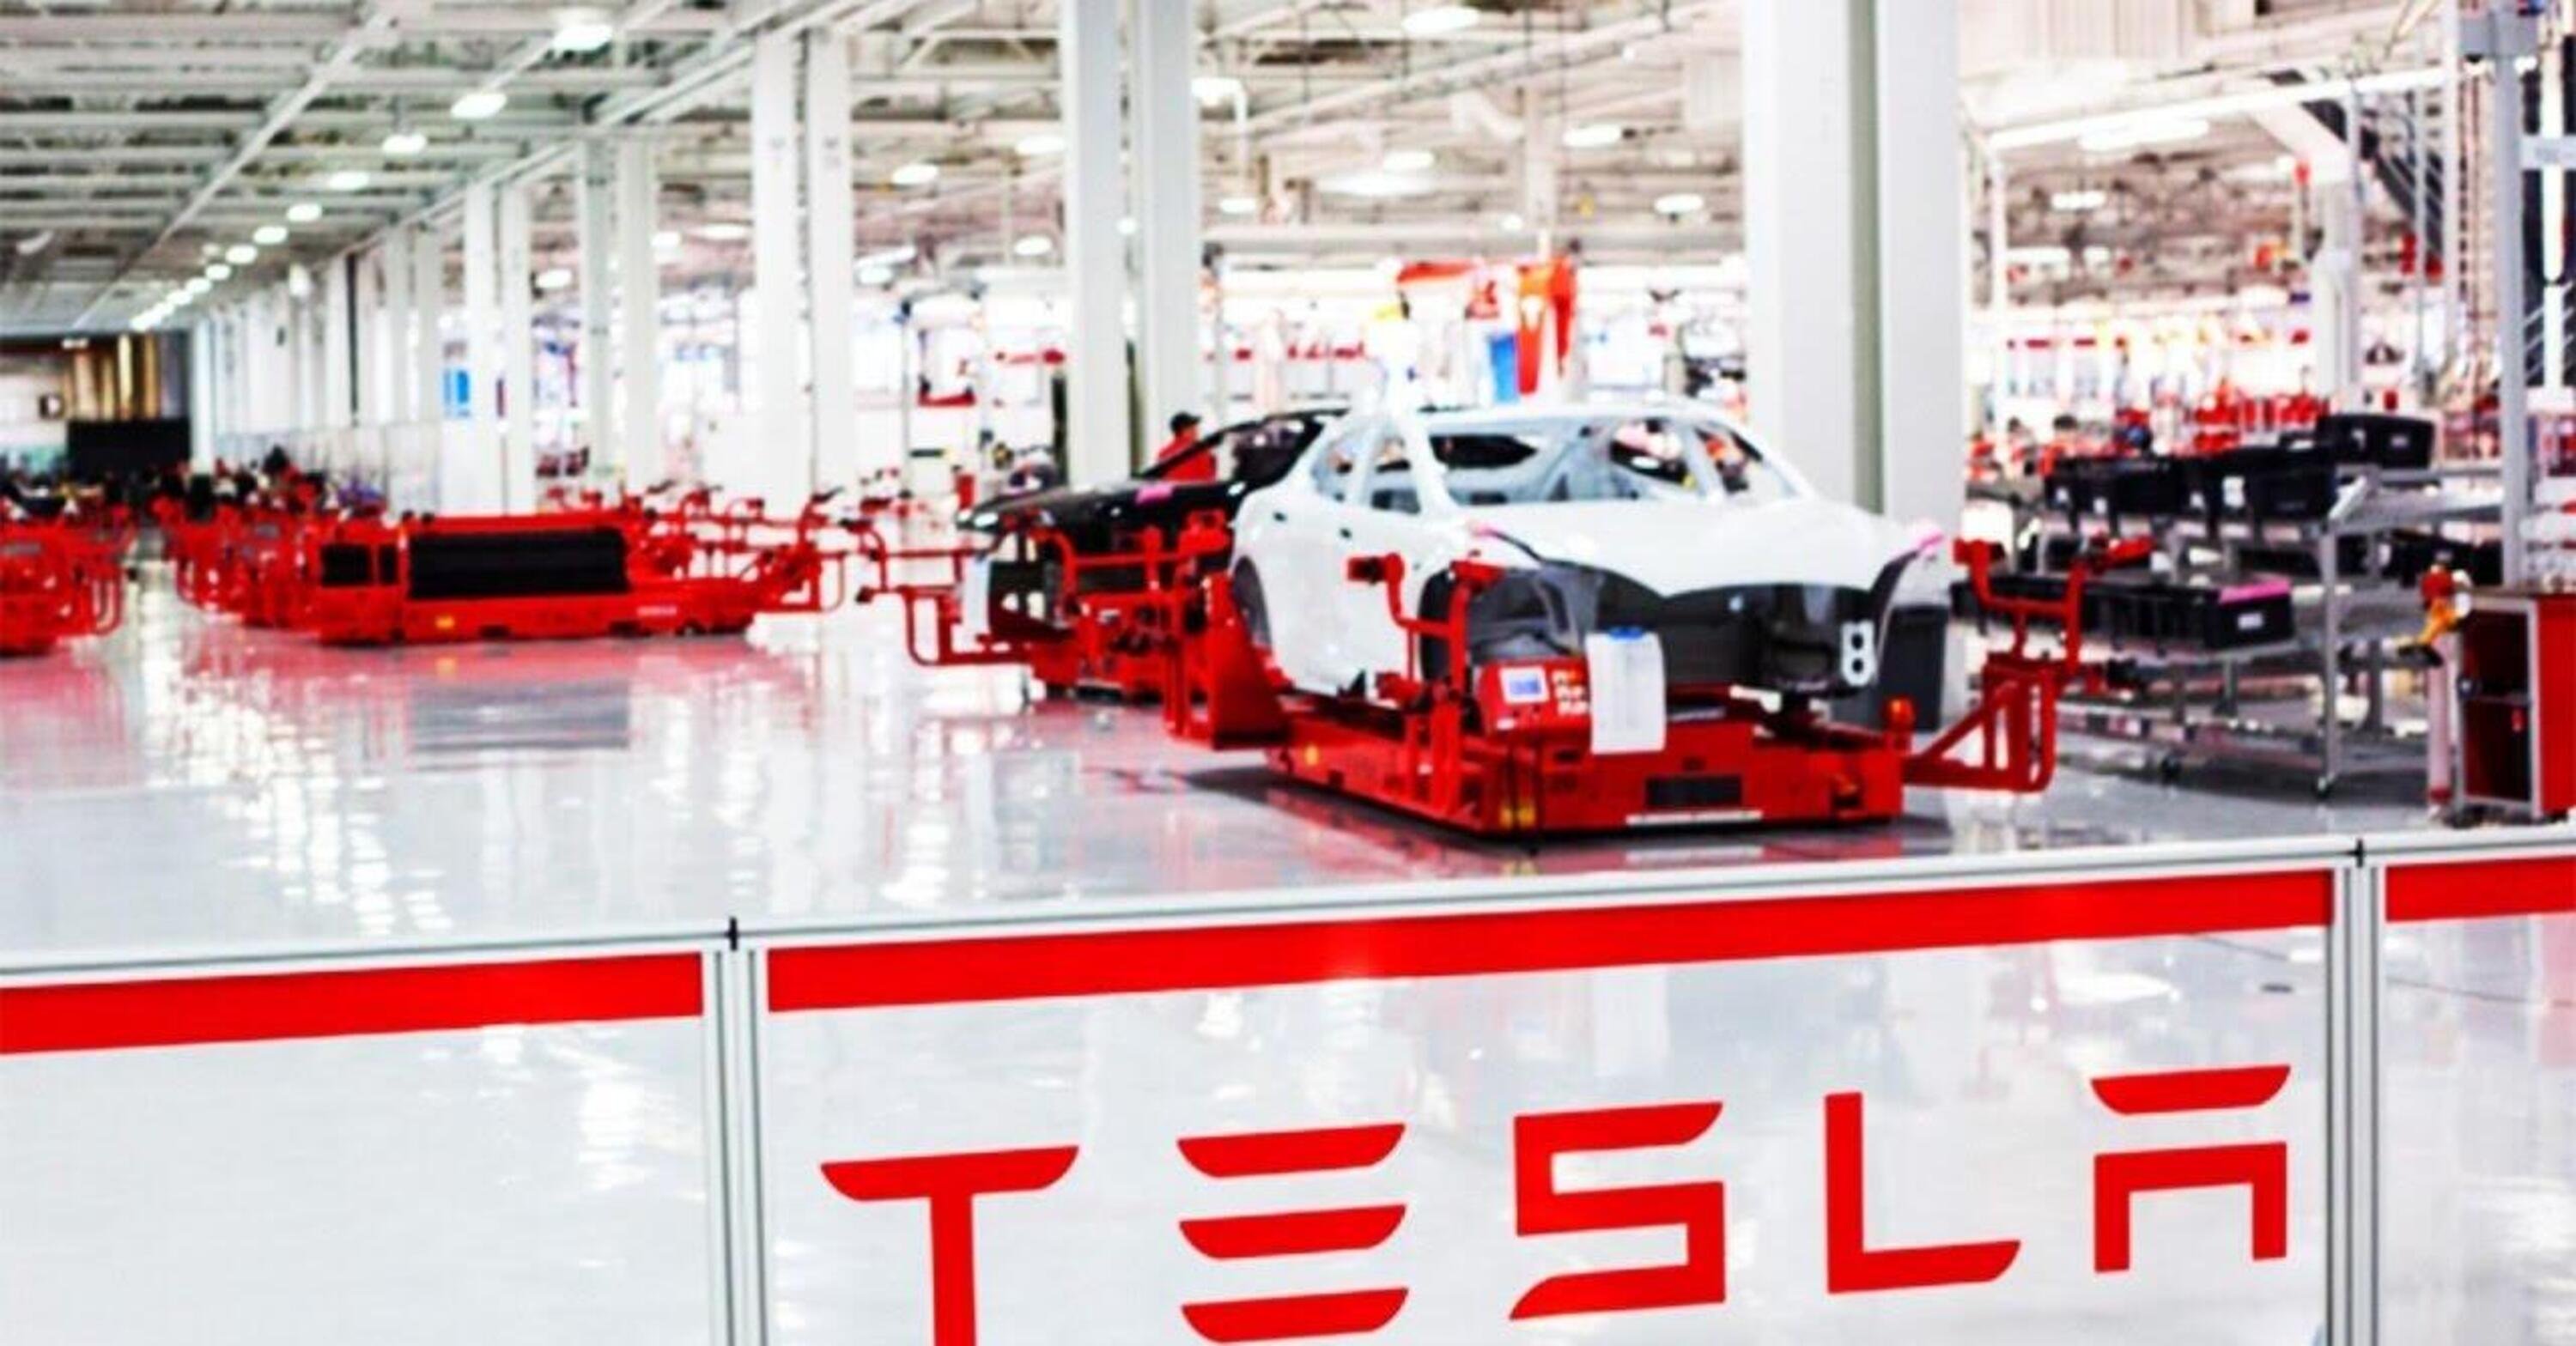 Elon Musk fa la pace con la California: Tesla ritorna nella Bay Area